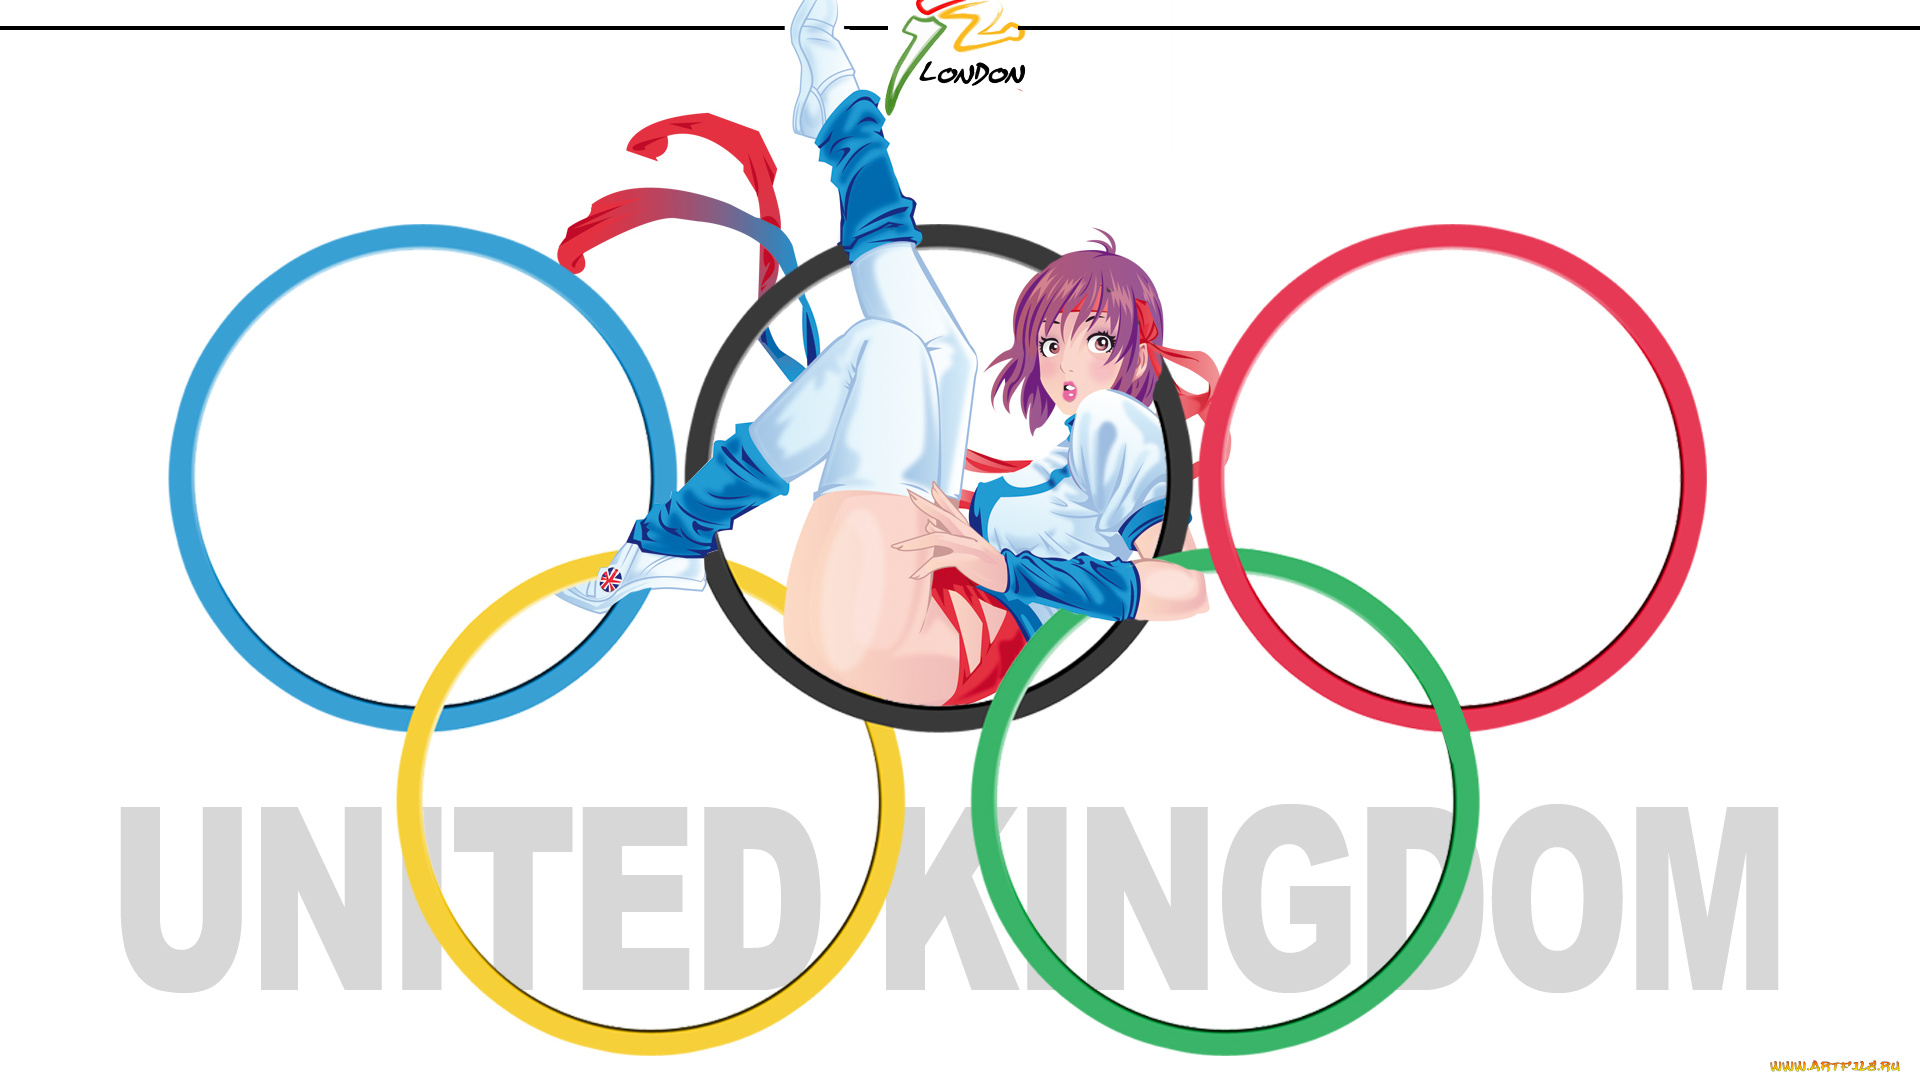 спорт, 3d, рисованные, олимпиада, 2012